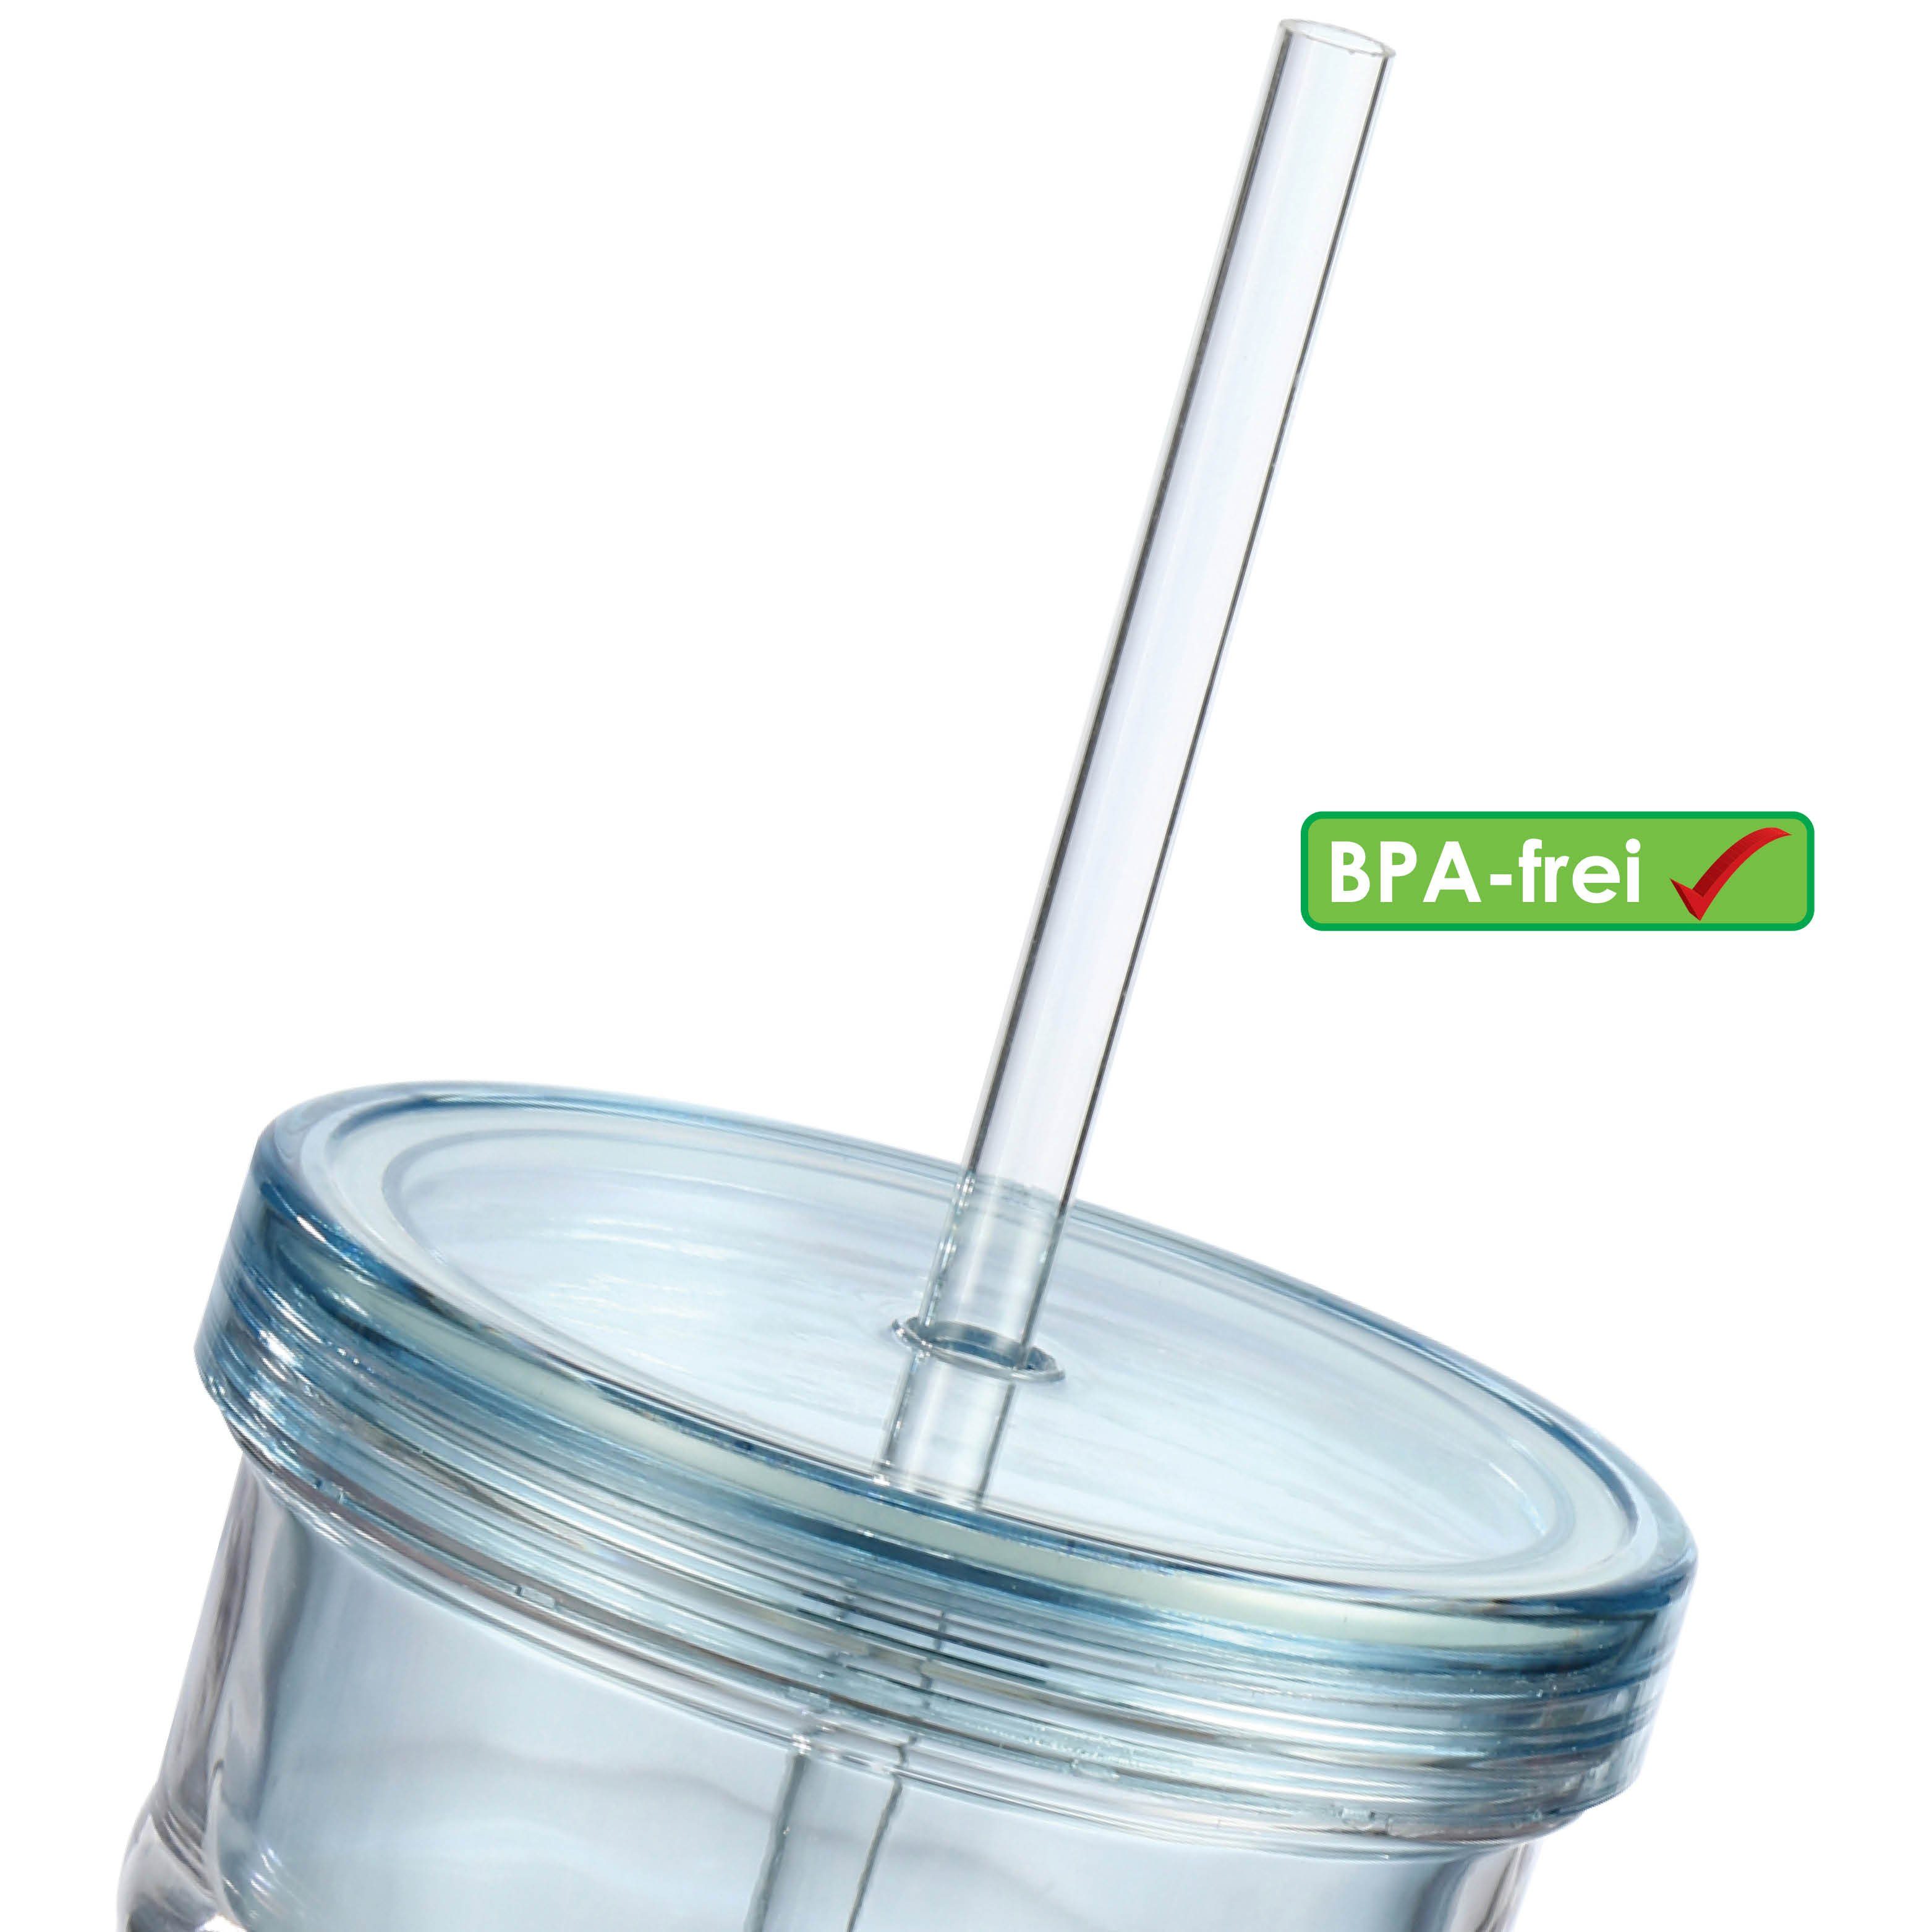 bremermann Thermobecher bremermann BPA-frei, Inhalt, ml 650 Kunststoff, integriertem Trinkhalm, Trinkhalm mit integriertem Thermobecher mit